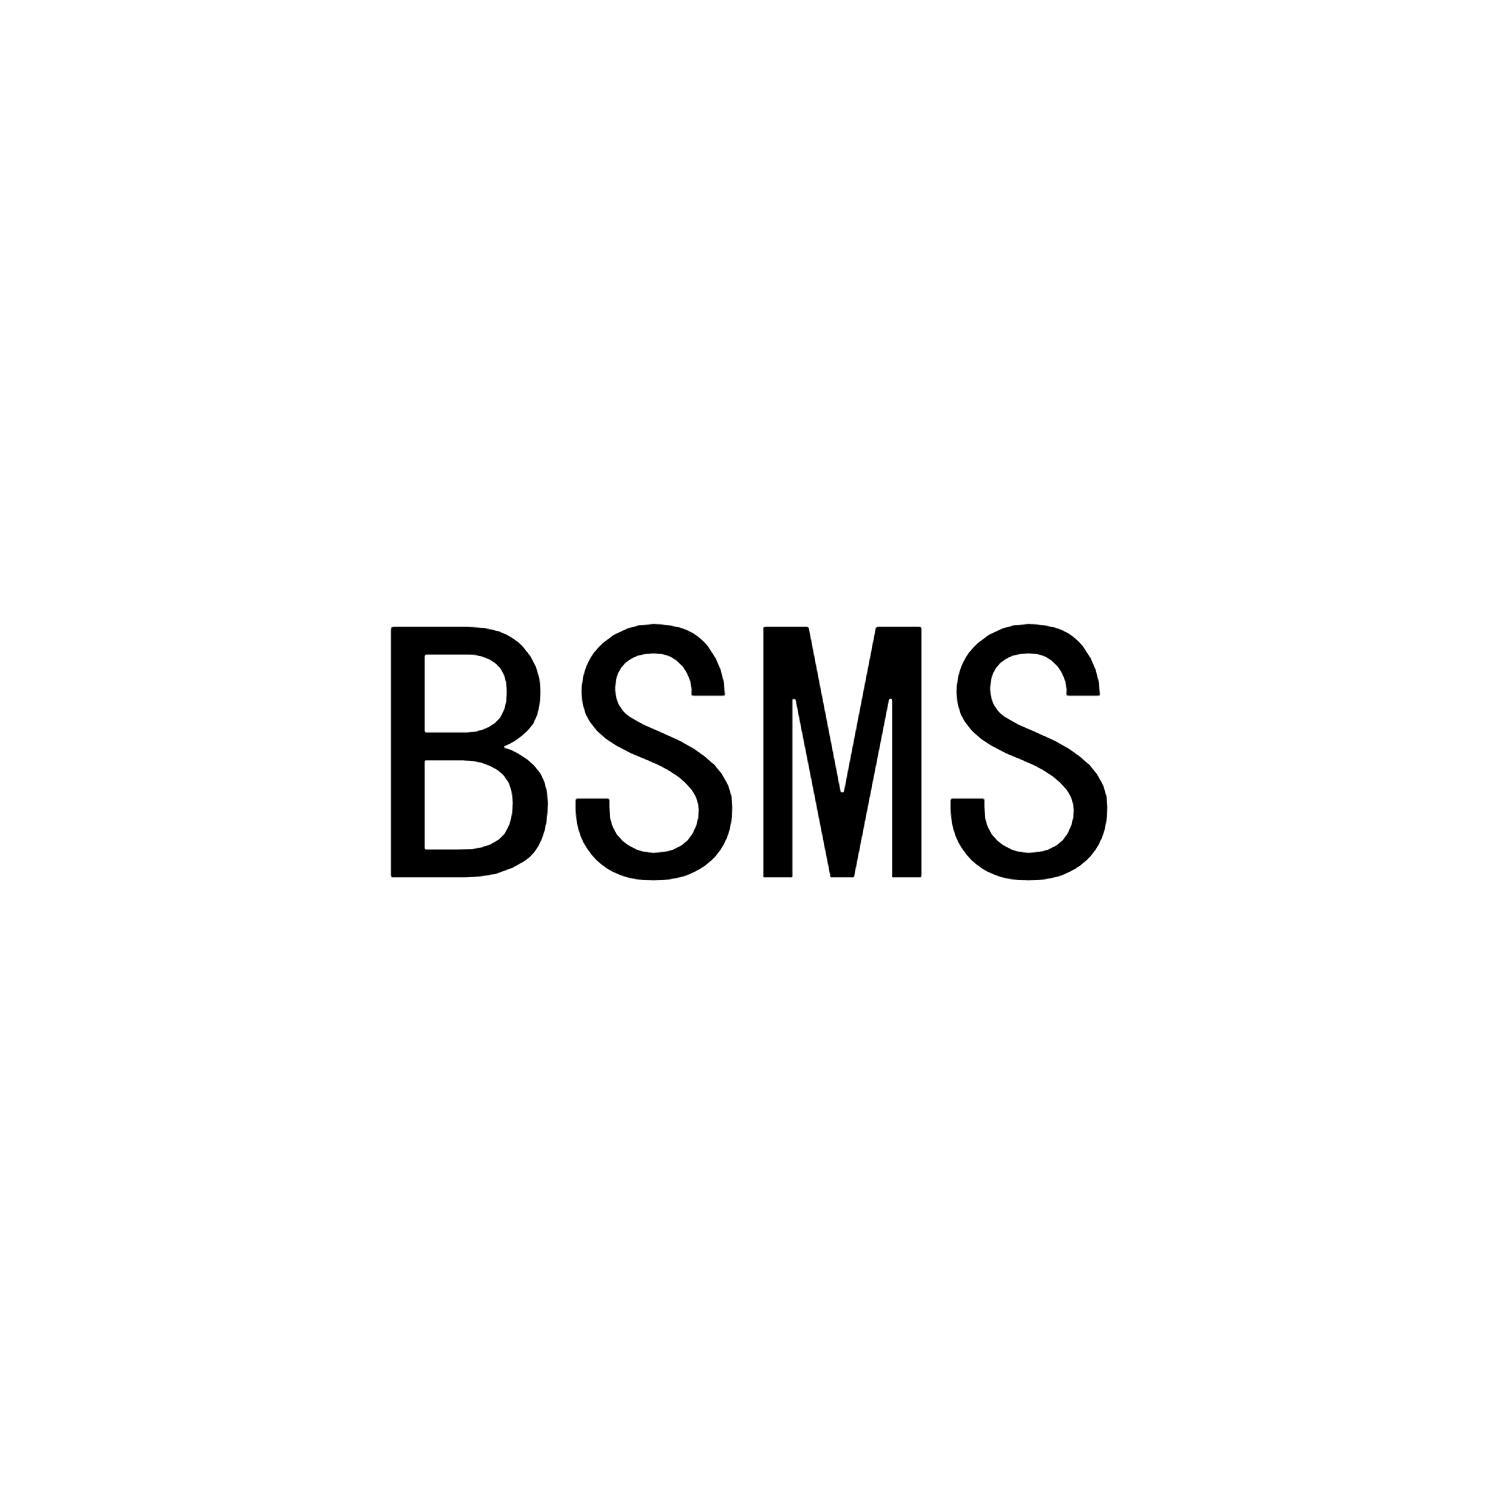 BSMS